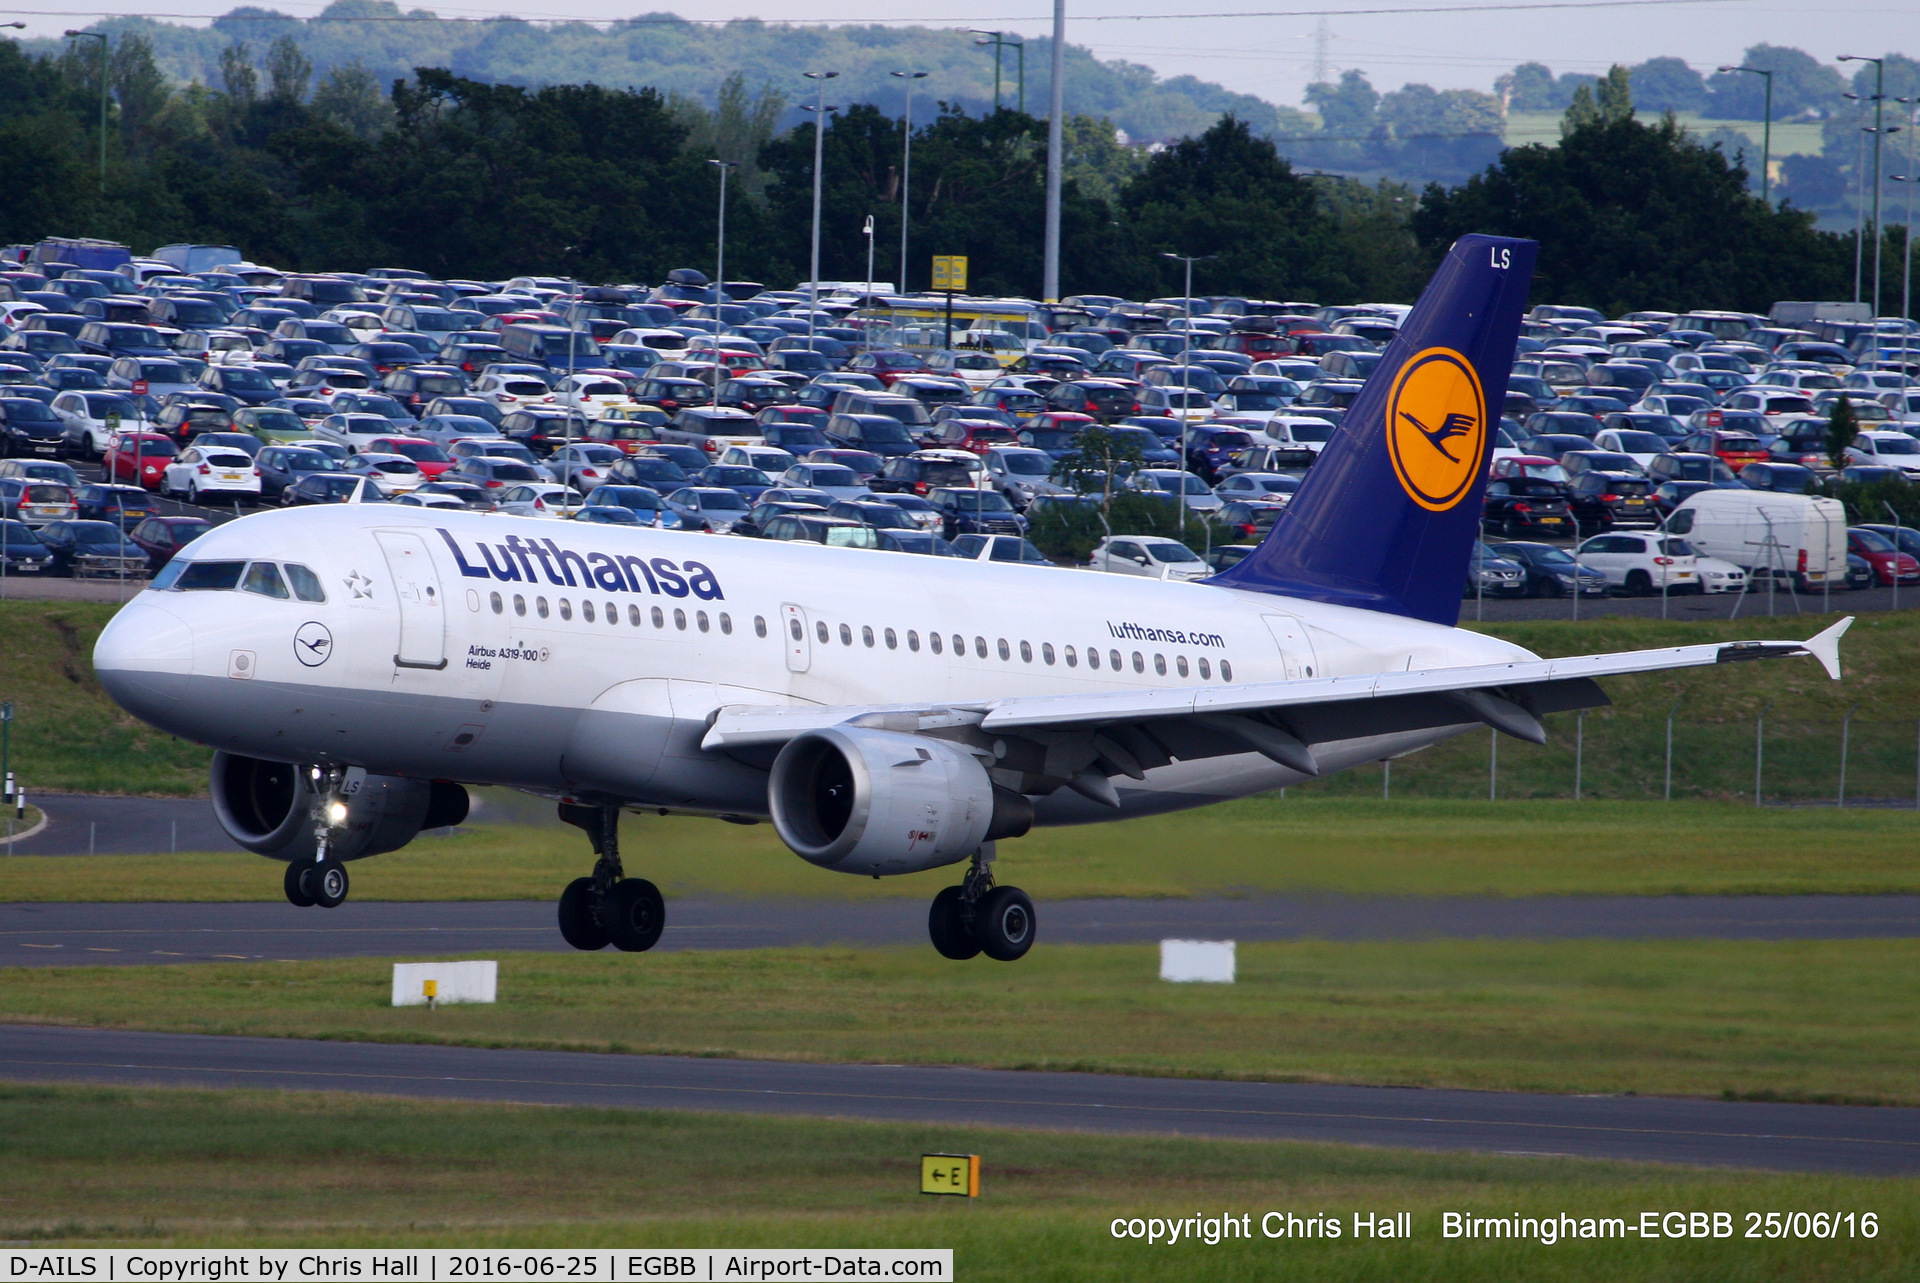 D-AILS, 1997 Airbus A319-114 C/N 729, Lufthansa